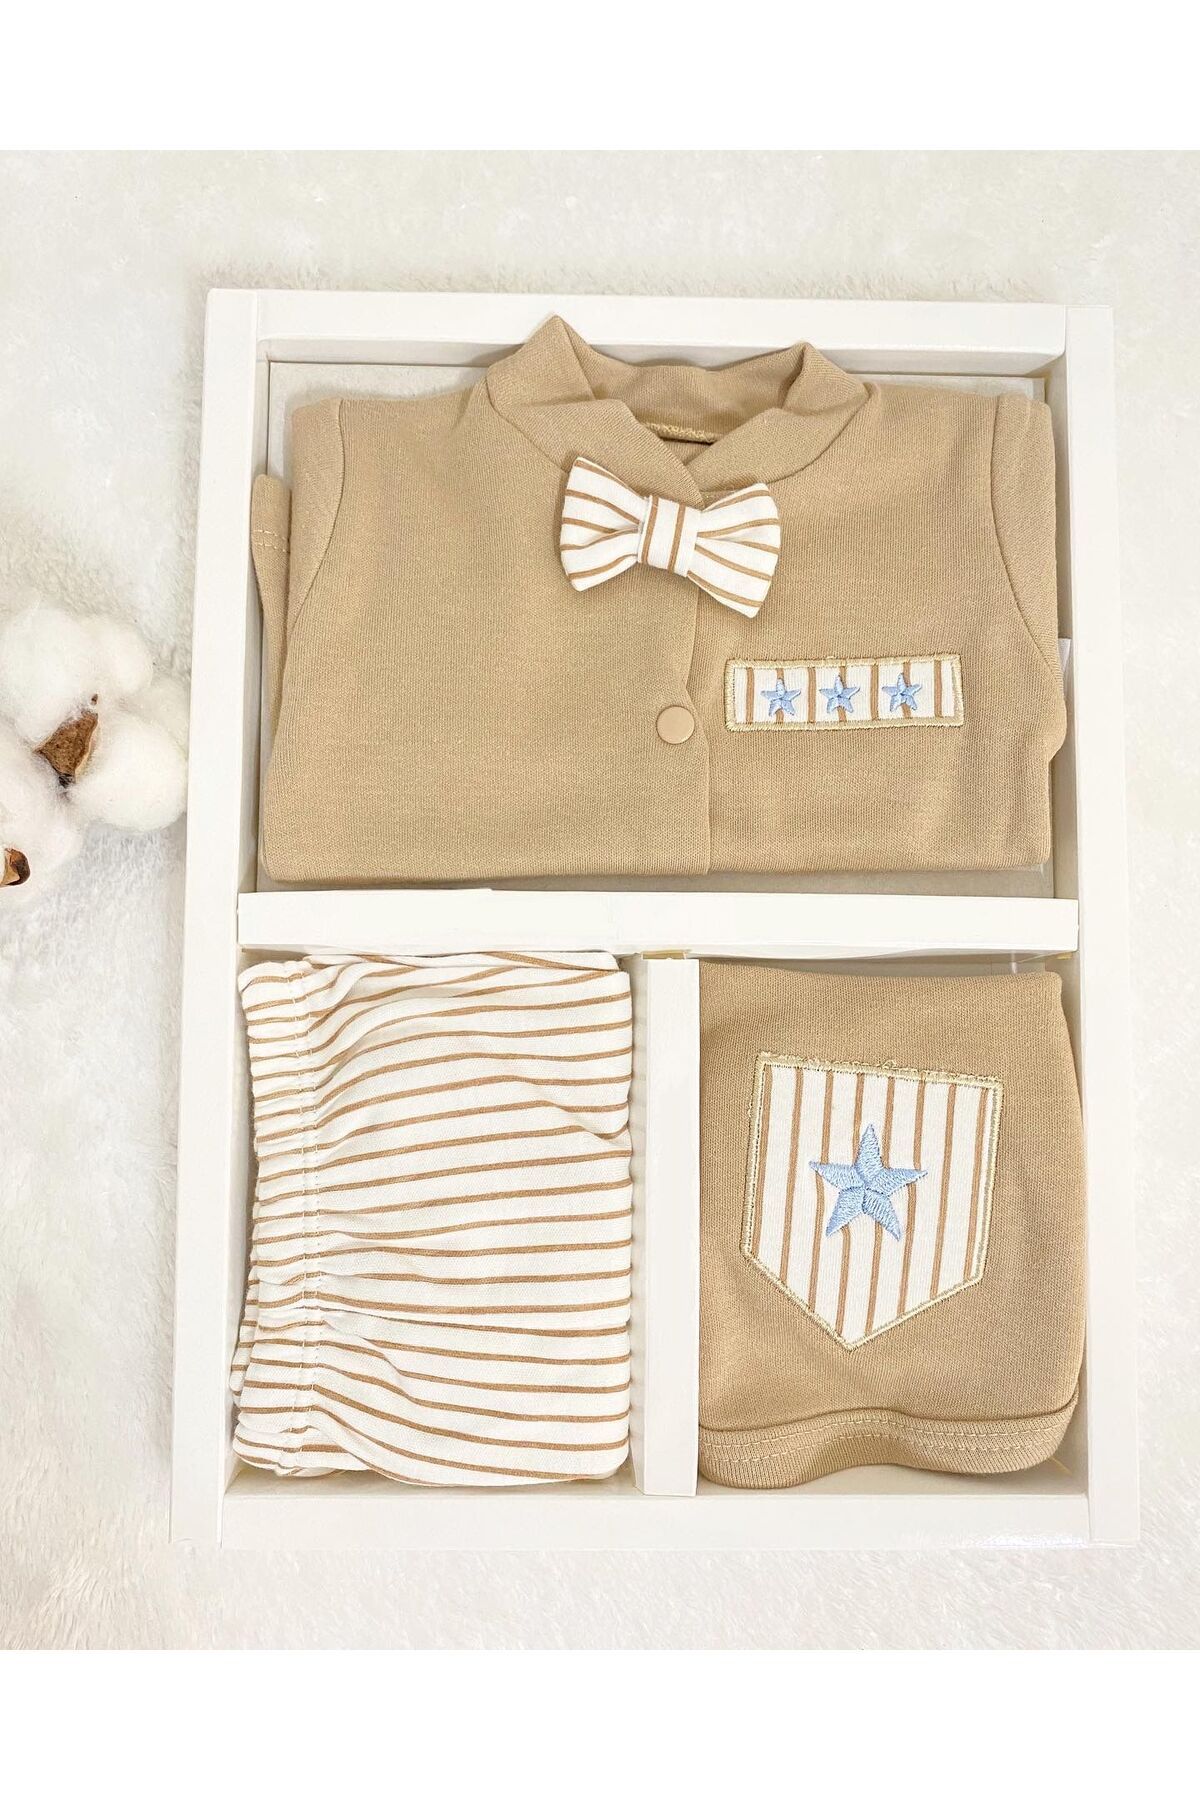 VERONA TARZ Yeni Sezon Organik Kutulu Erkek Bebek Papyonlu 5li Hastane Çıkış Seti Yenidoğan Kıyafeti Hediyelik